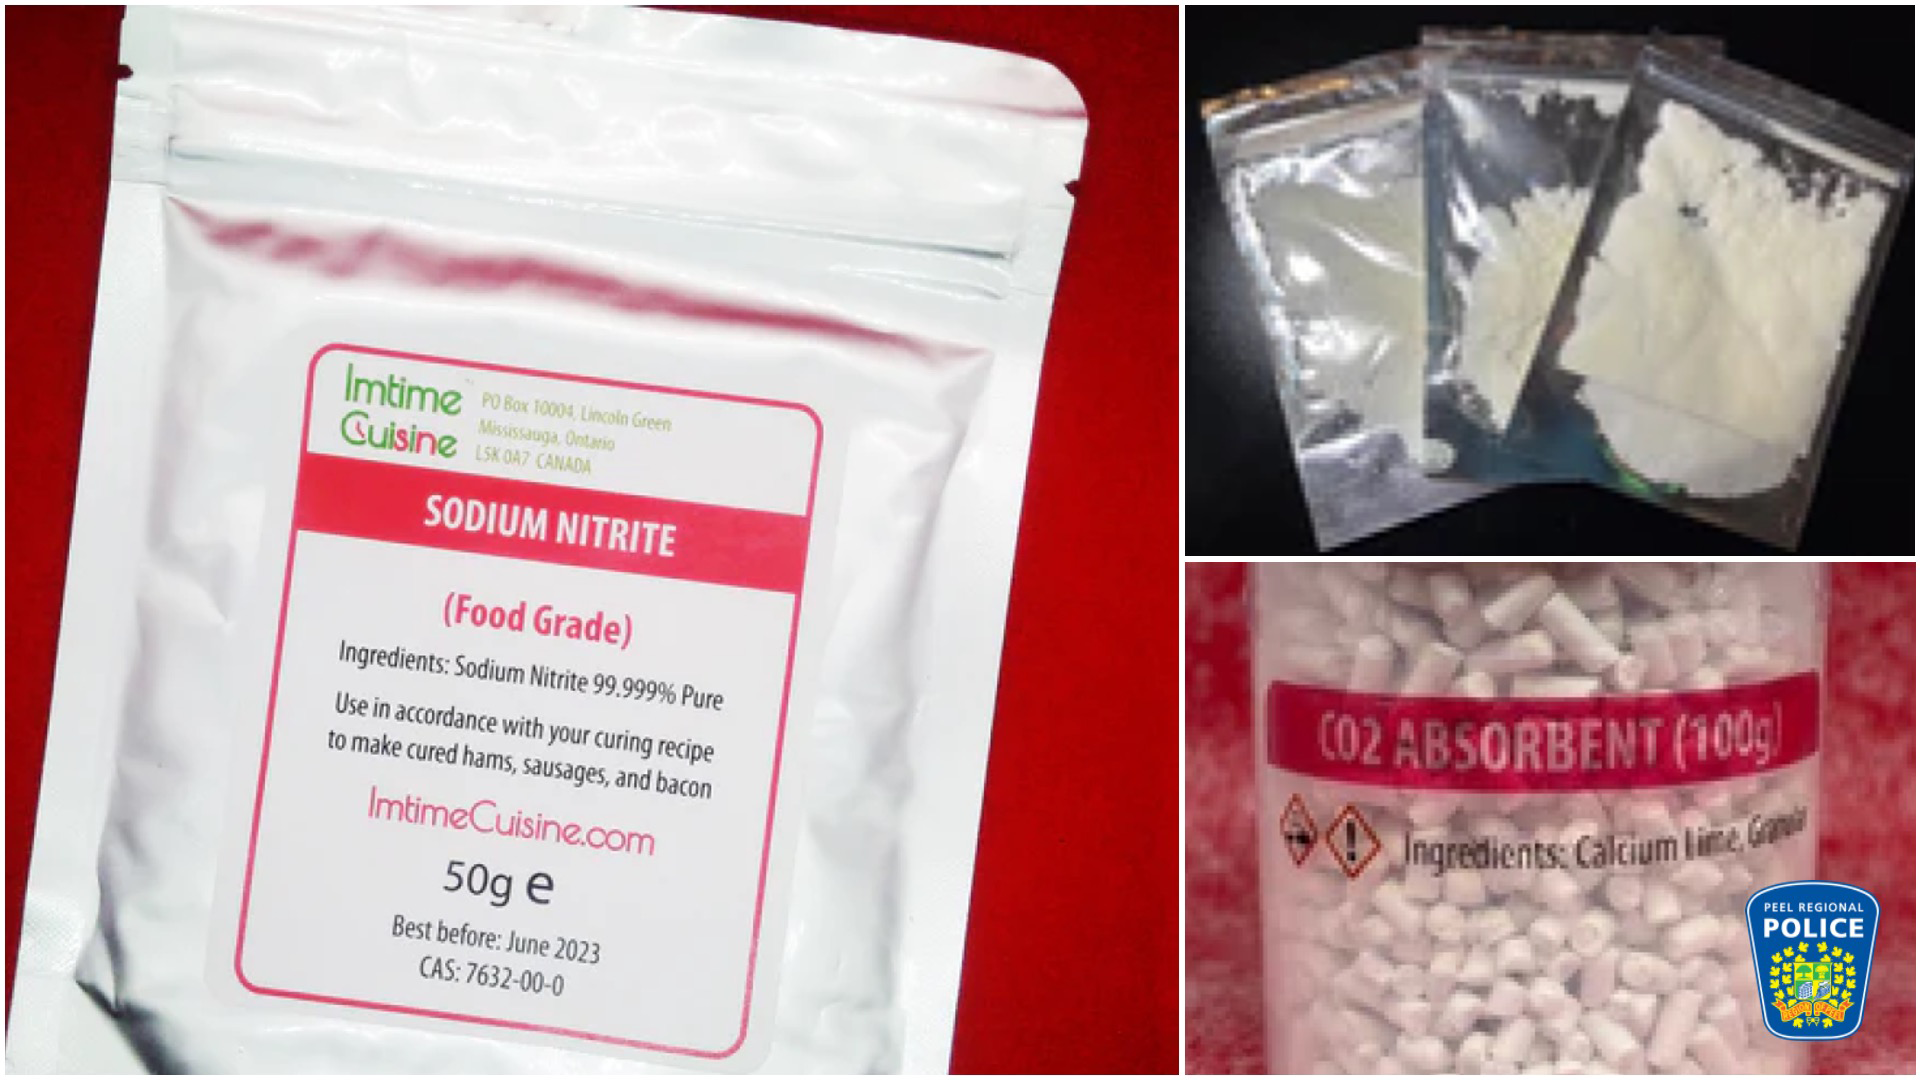 Le Service de police de la Ville de Montréal (SPVM) a ouvert une enquête concernant l’envoi de trousses contenant du nitrite de sodium sur son territoire.